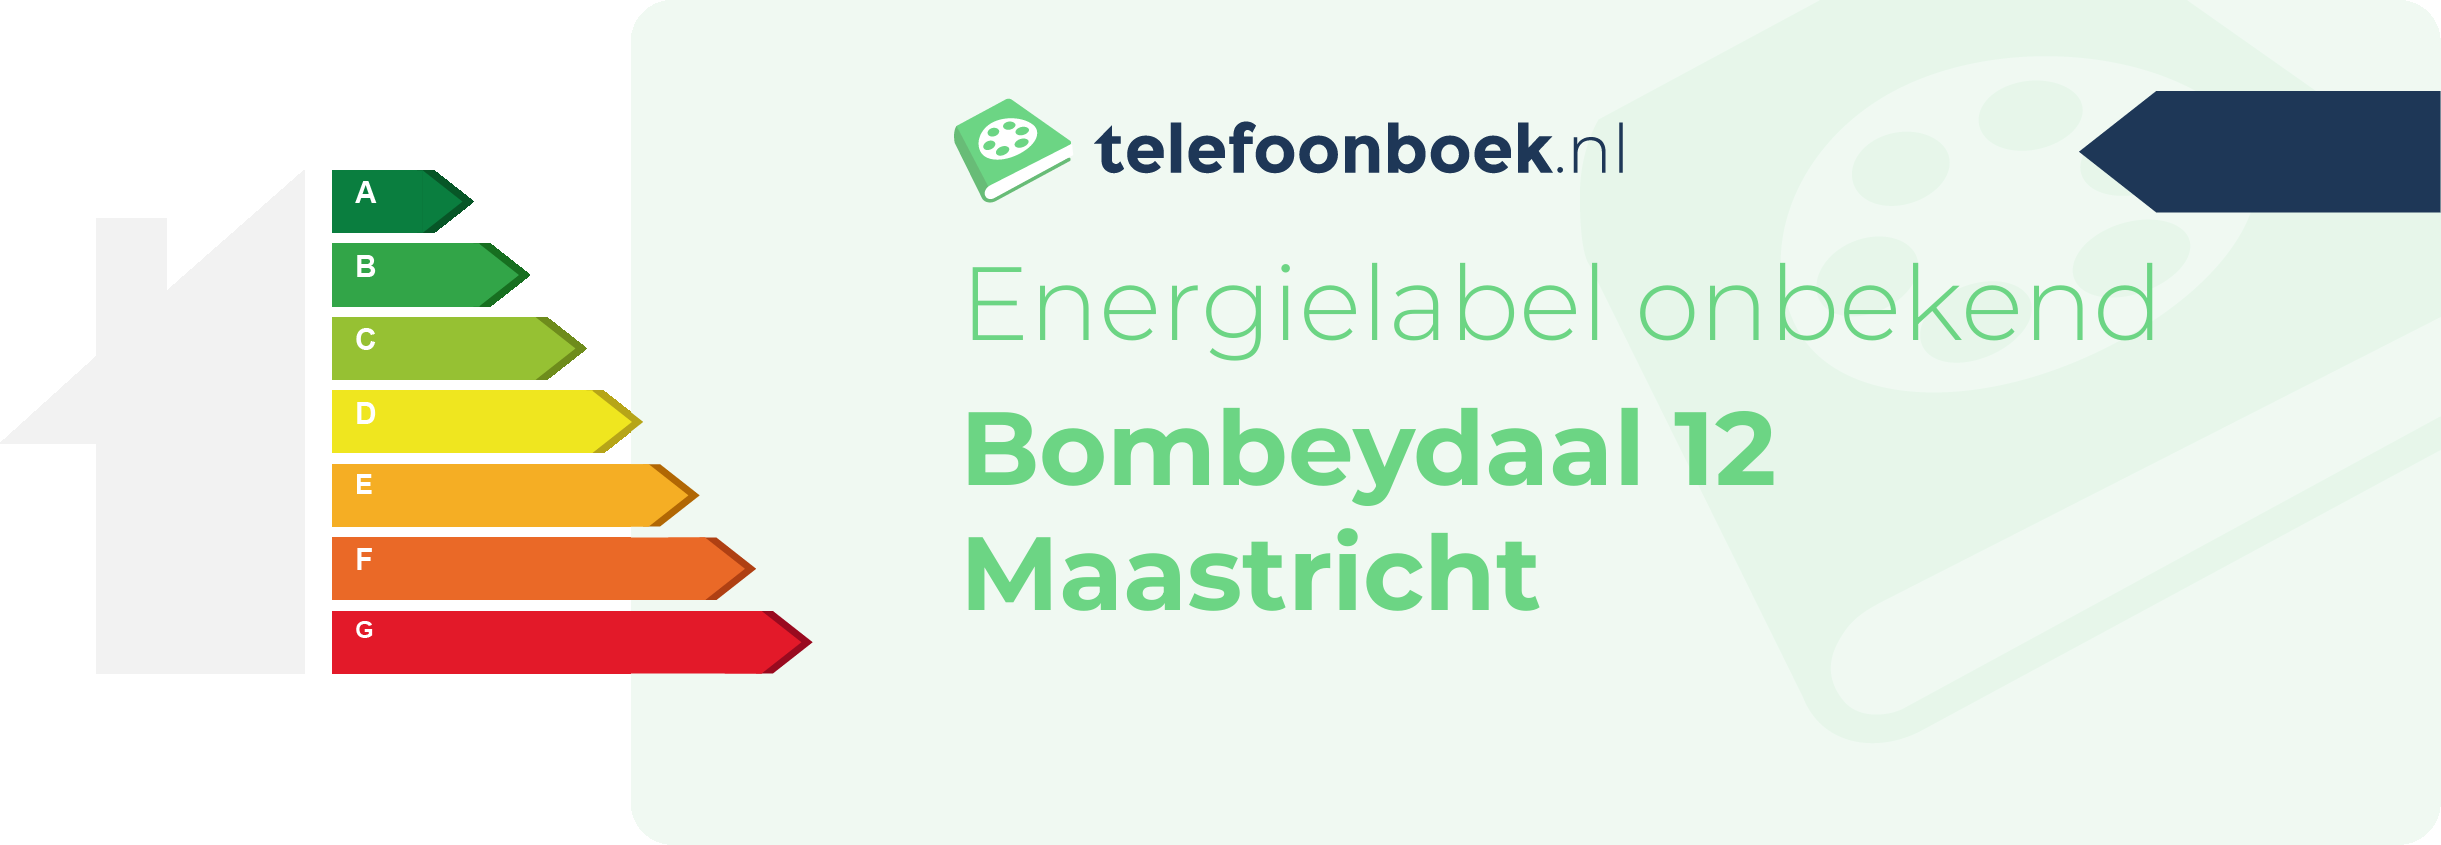 Energielabel Bombeydaal 12 Maastricht